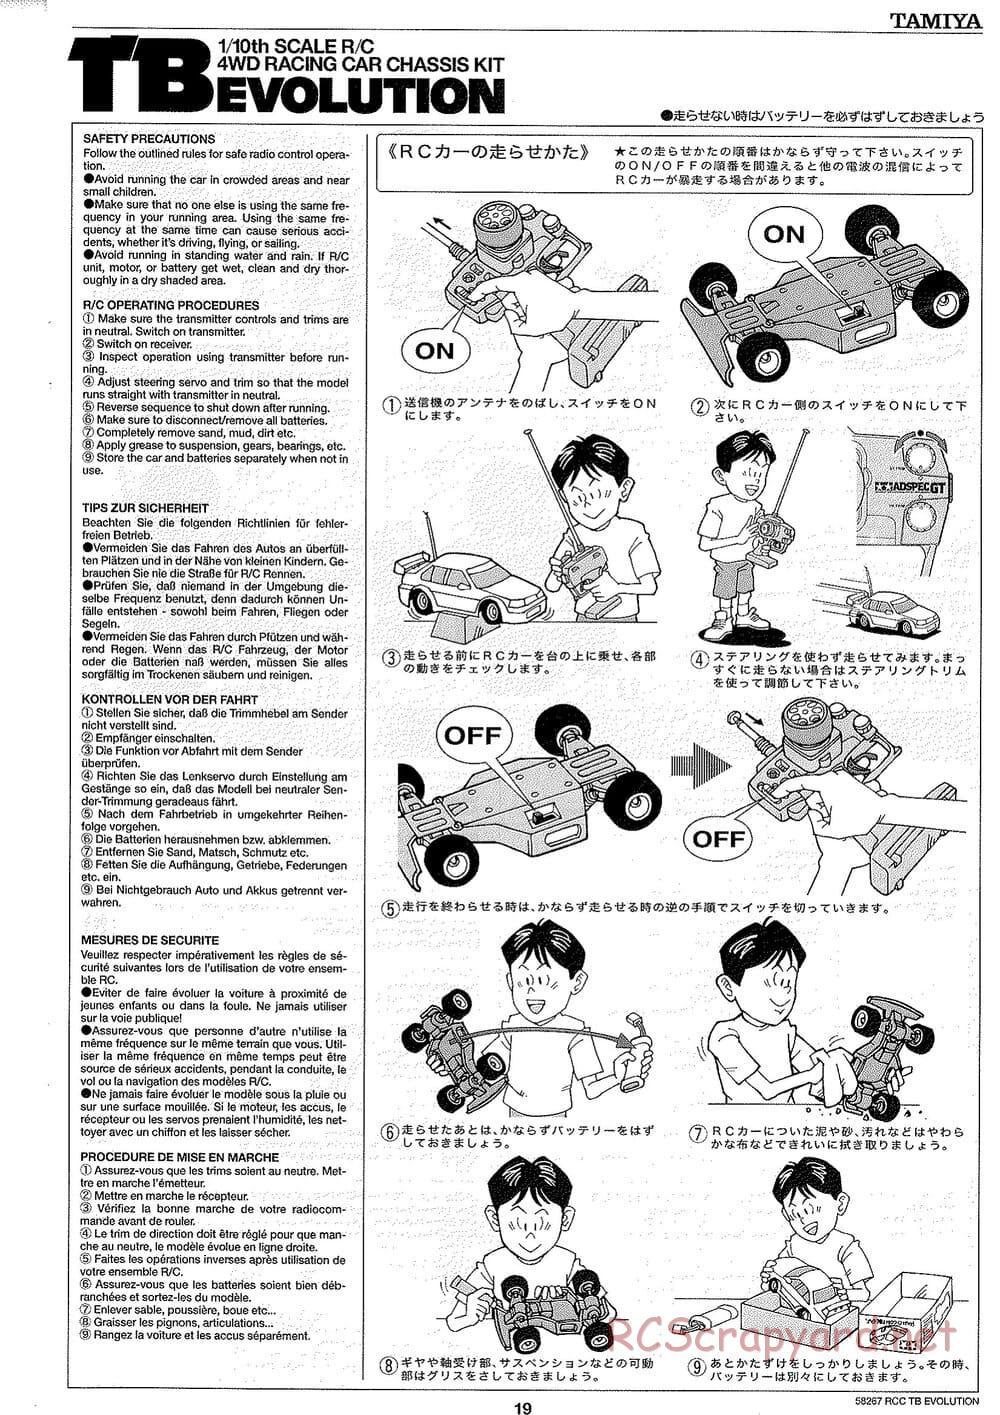 Tamiya - TB Evolution Chassis - Manual - Page 19